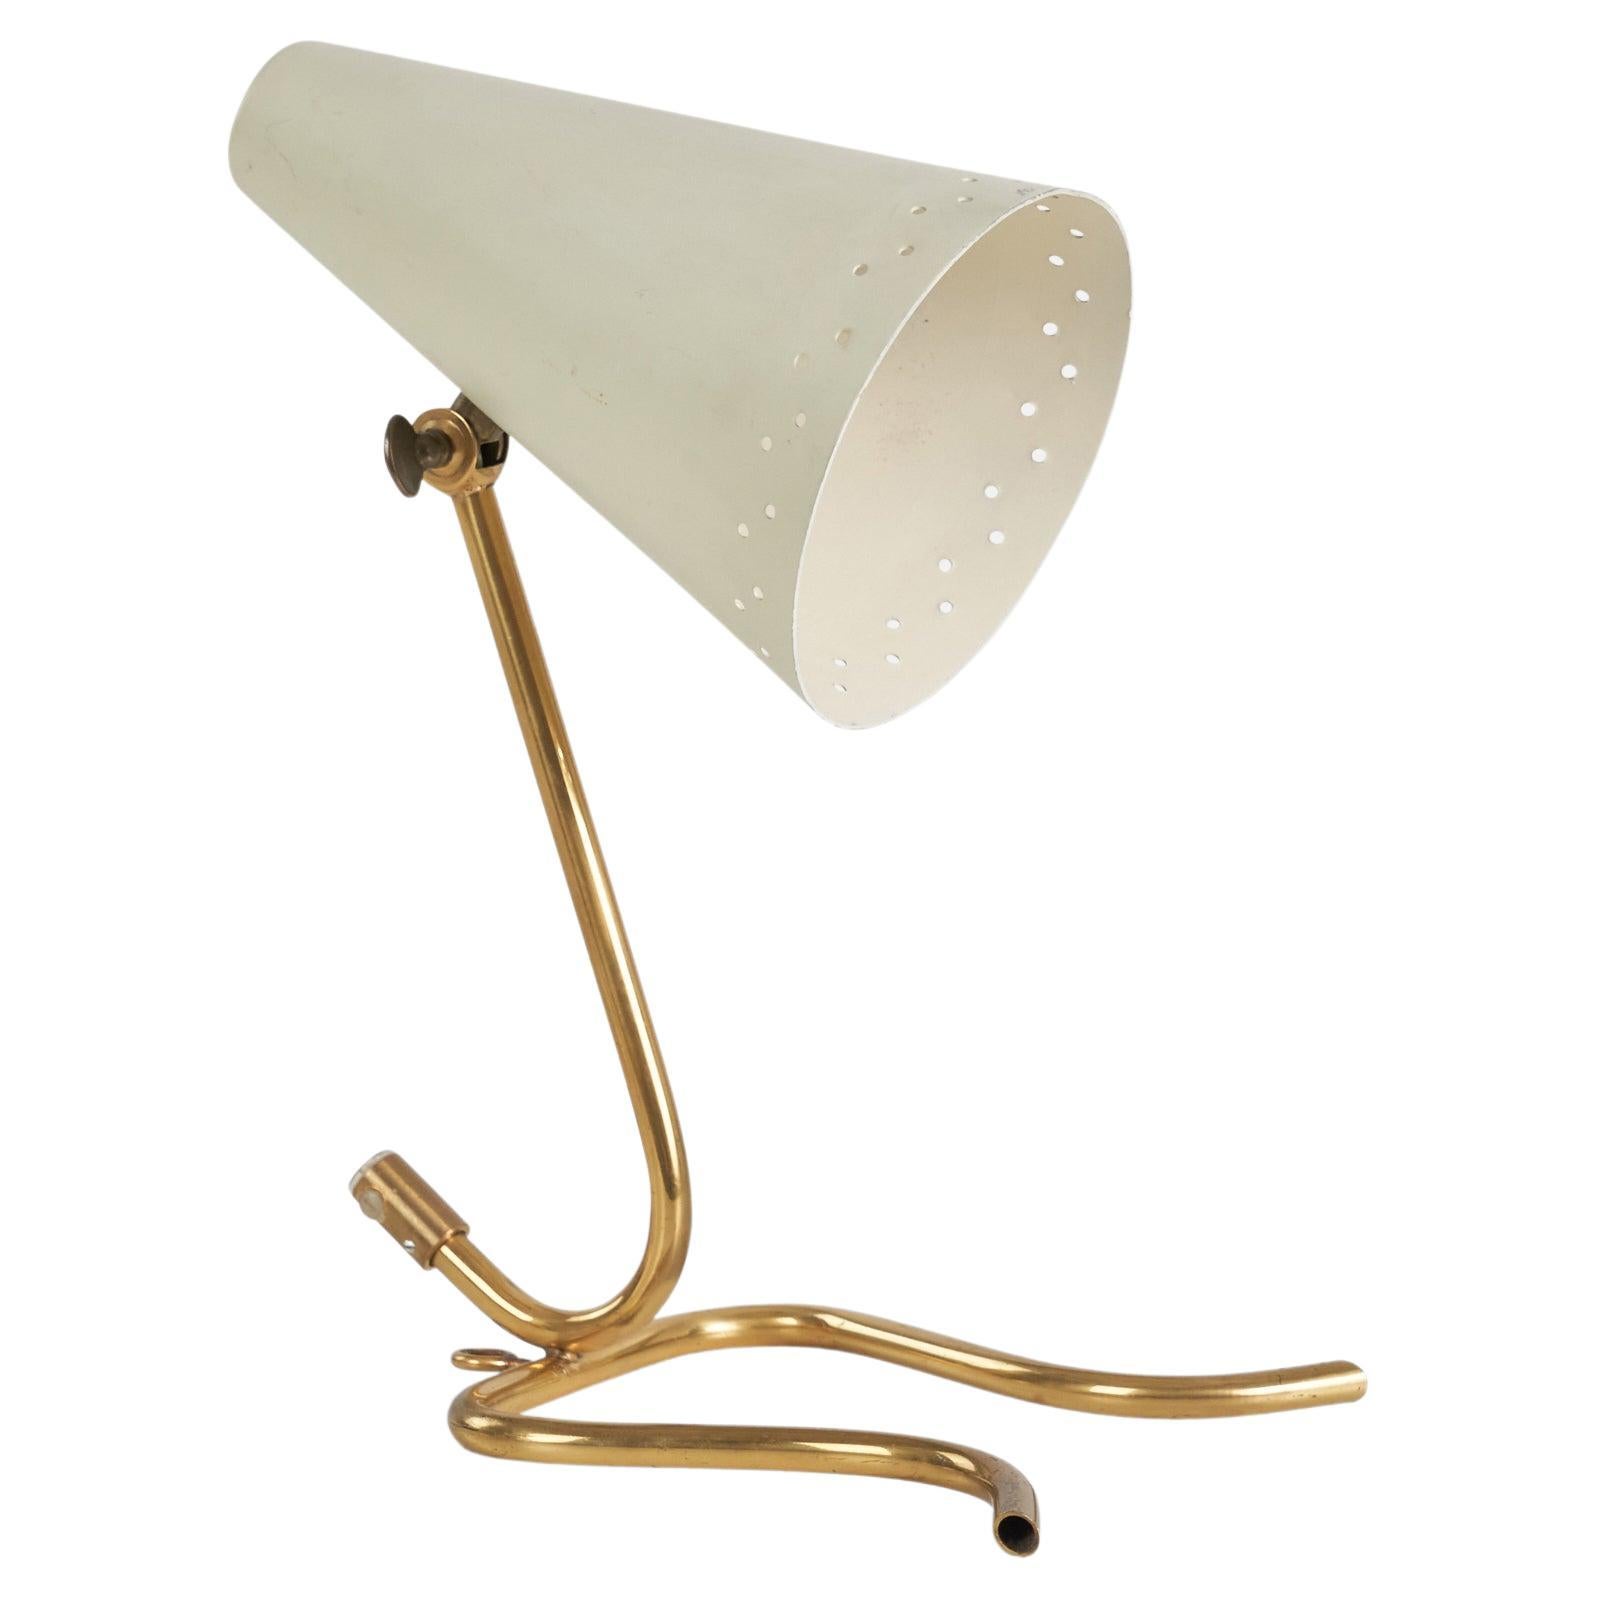 Swedish Designer, Adjustable Table Lamp, Brass, Metal, Sweden, 1950s